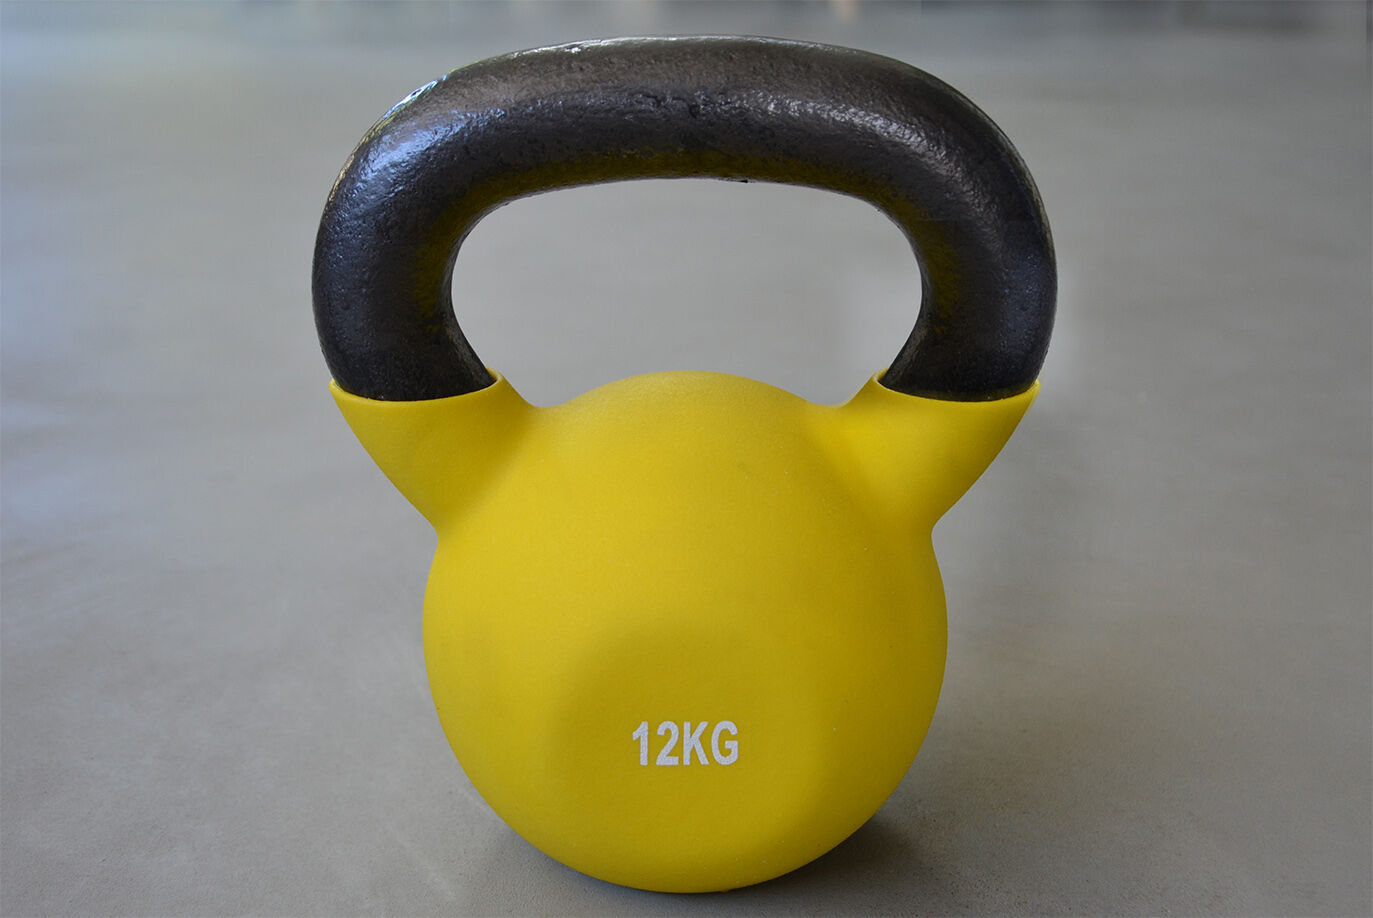 12kg Neoprene Covered Kettlebell, Muscle Strength